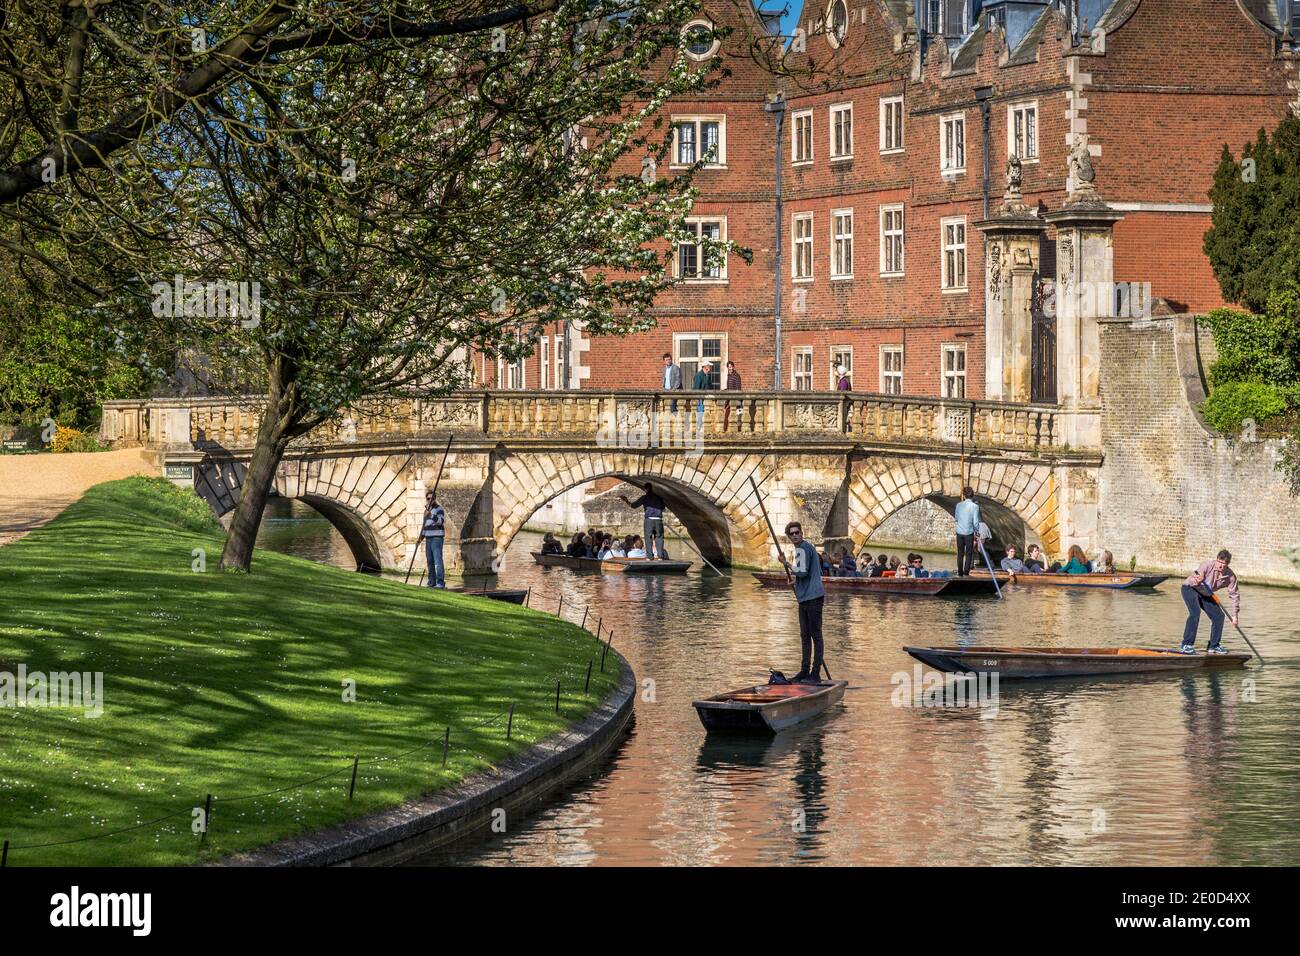 Turisti che si godono gite punt lungo il fiume Cam in centro Cambridge, Regno Unito Foto Stock